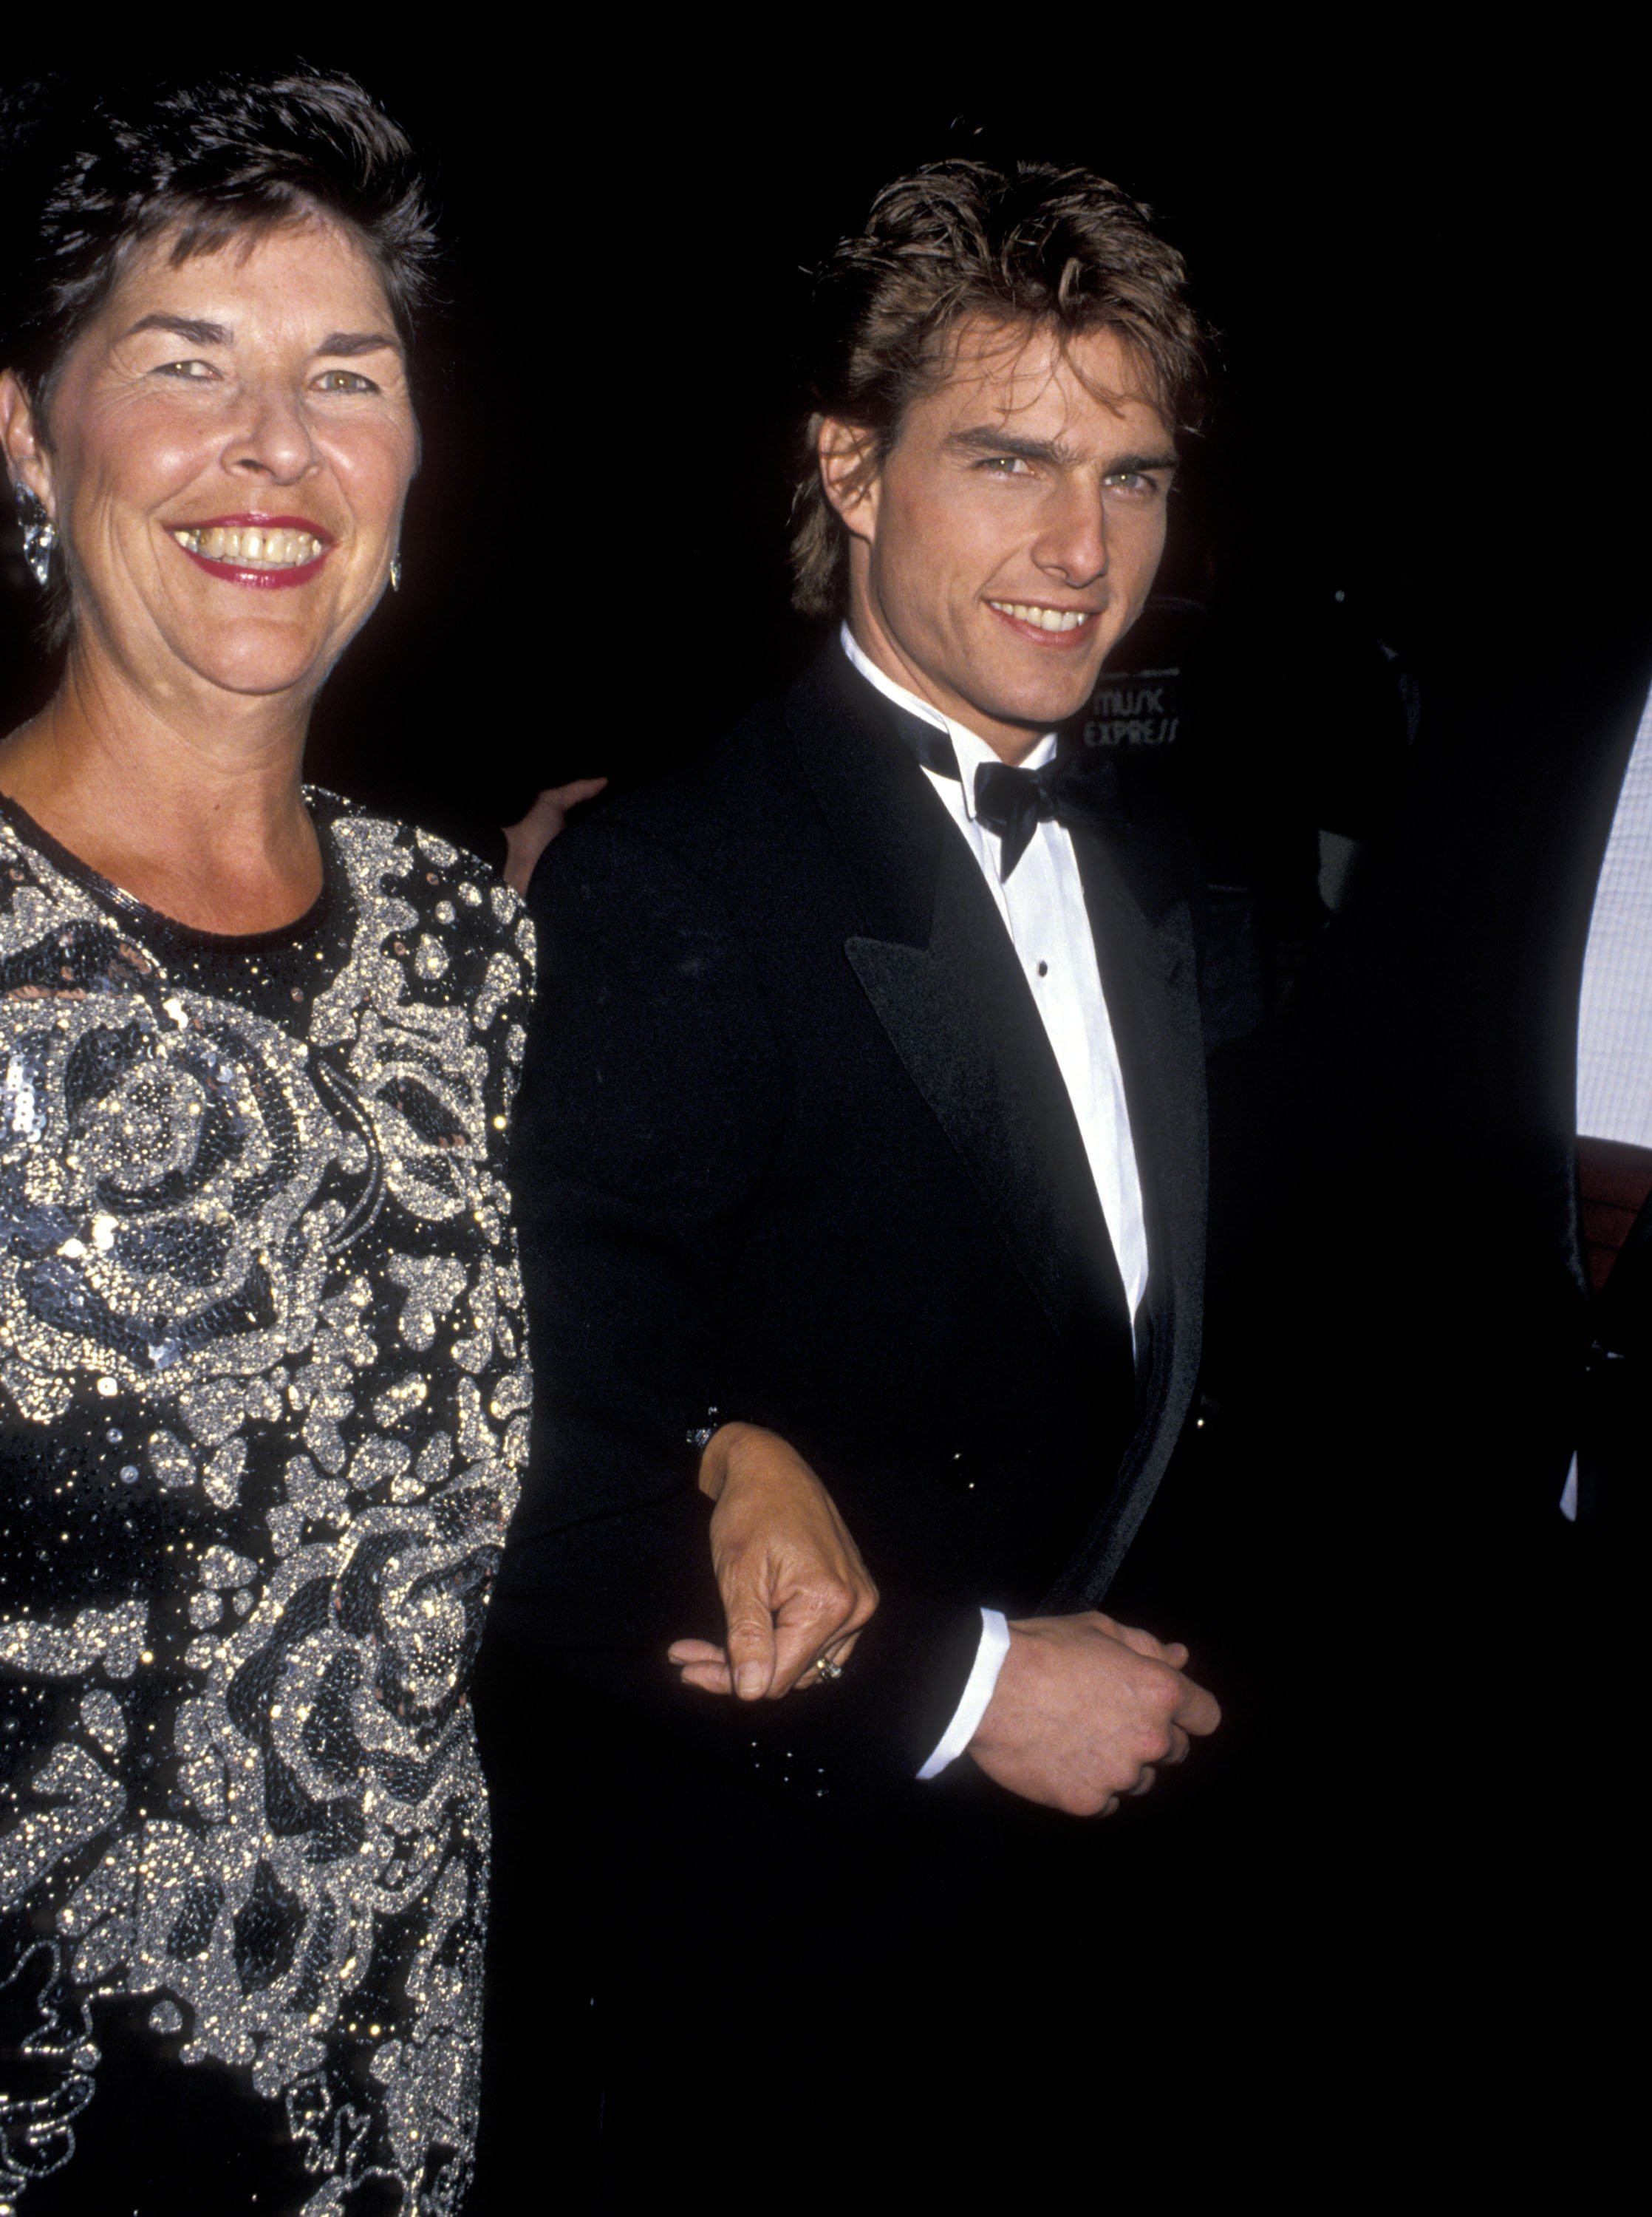 Tom Cruise et sa mère Mary Lee Pfeiffer assistent à la 47e édition des Golden Globe Awards à l'hôtel Beverly Hilton, le 20 janvier 1990, à Beverly Hills, en Californie. | Source : Getty Images